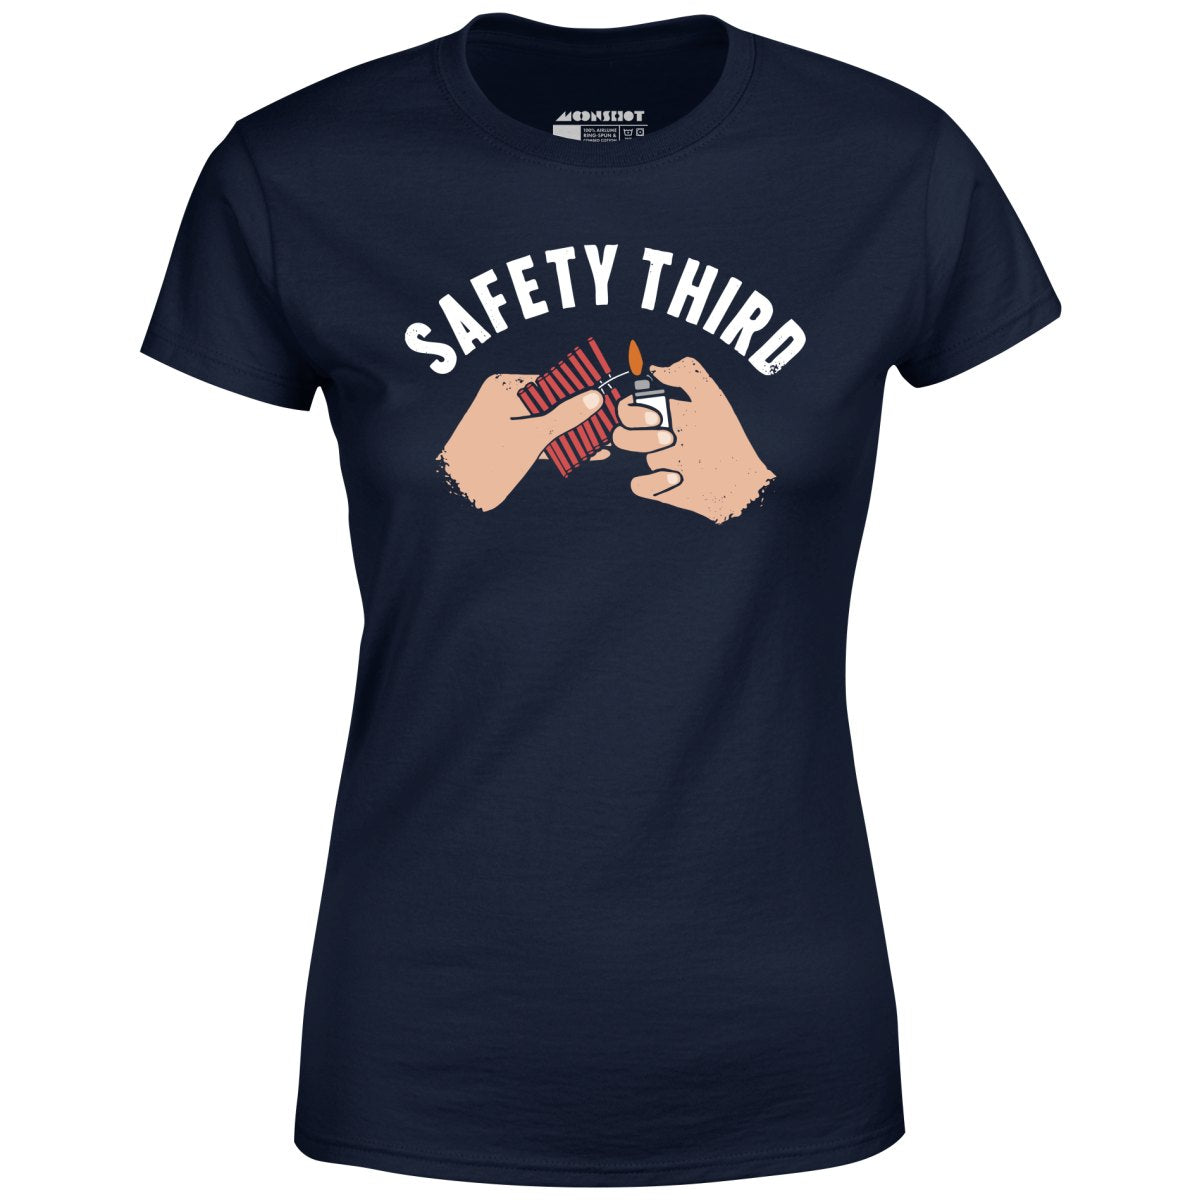 Safety Third - Women's T-Shirt